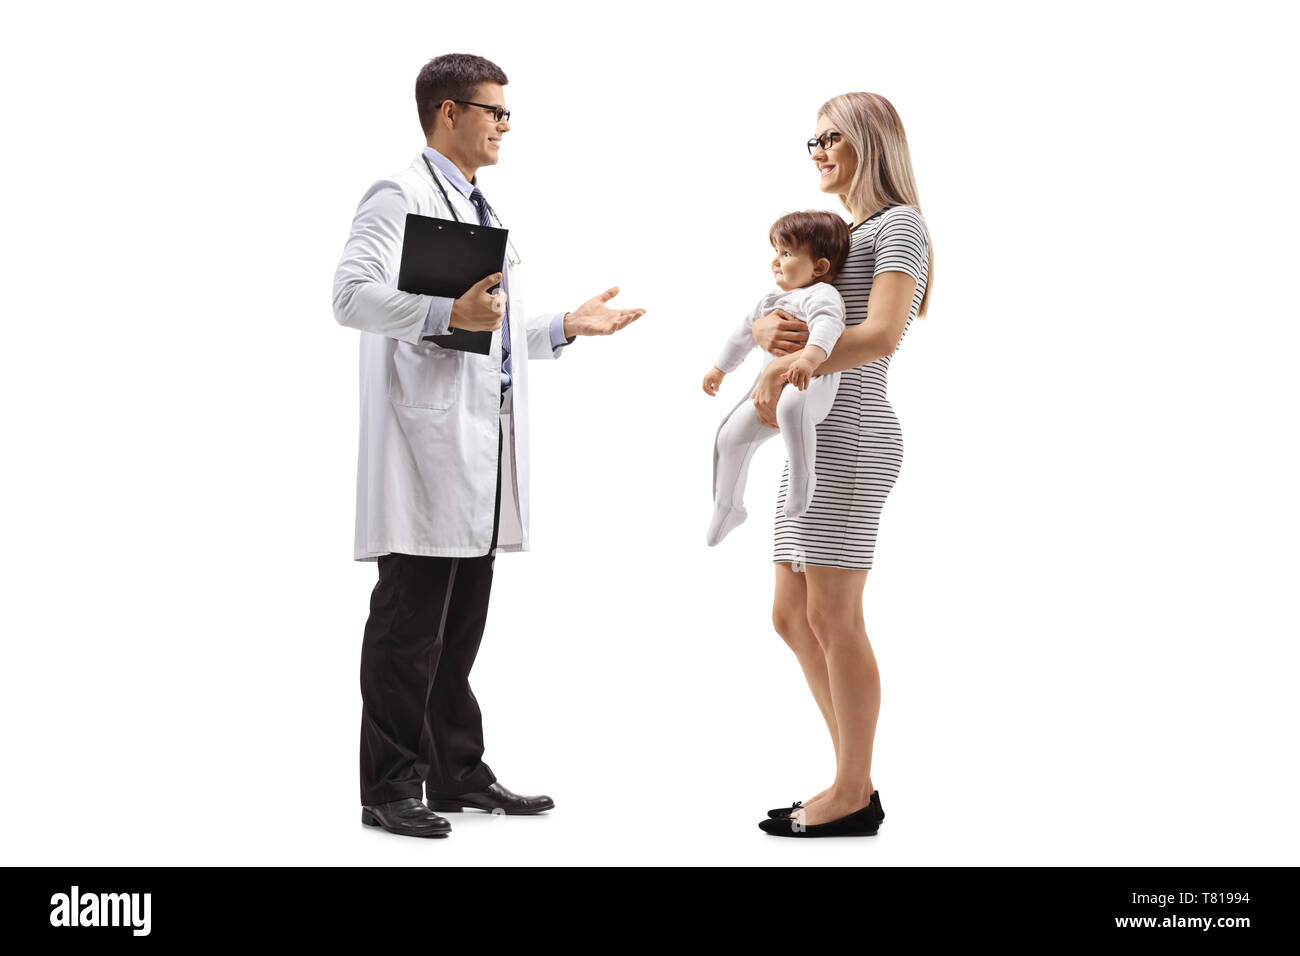 Disparo de longitud completa de una madre con un bebé hablando por un médico varón aislado sobre fondo blanco. Foto de stock